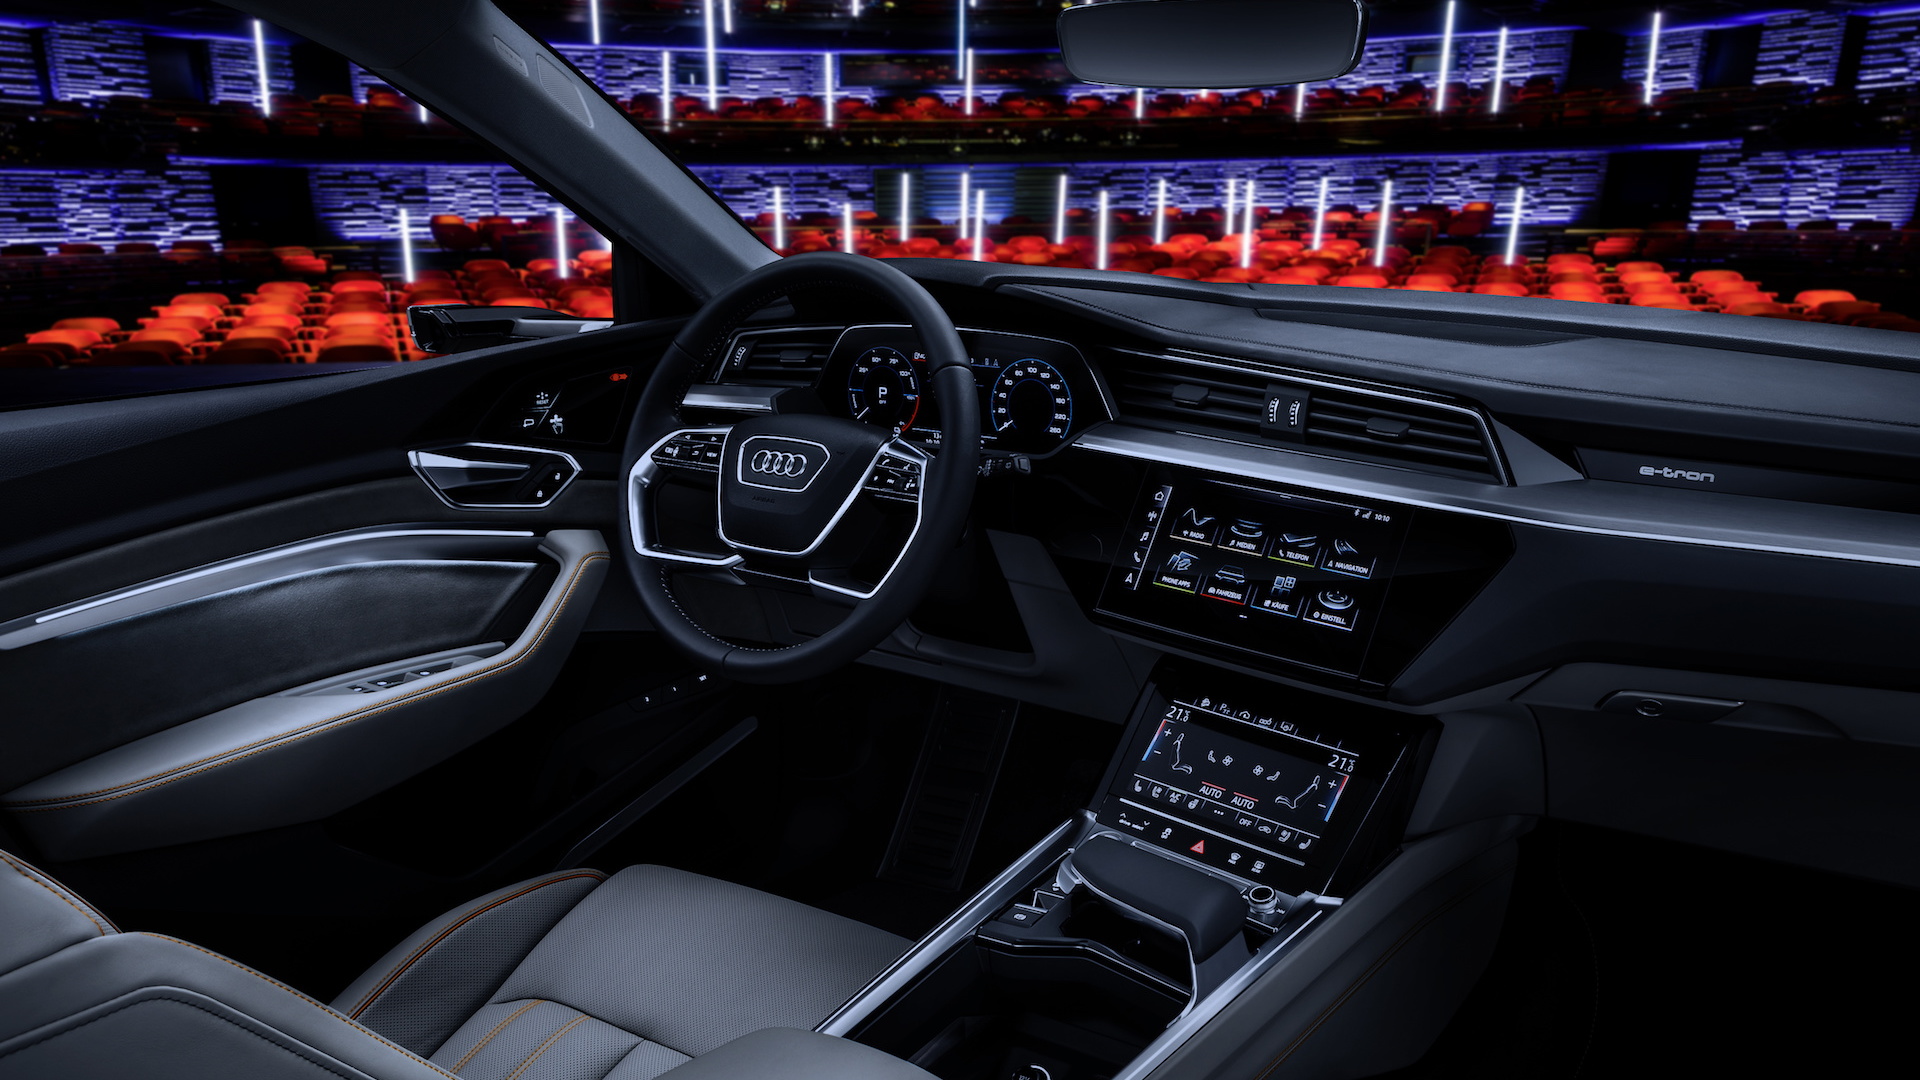 Audi e-tron electric SUV interior